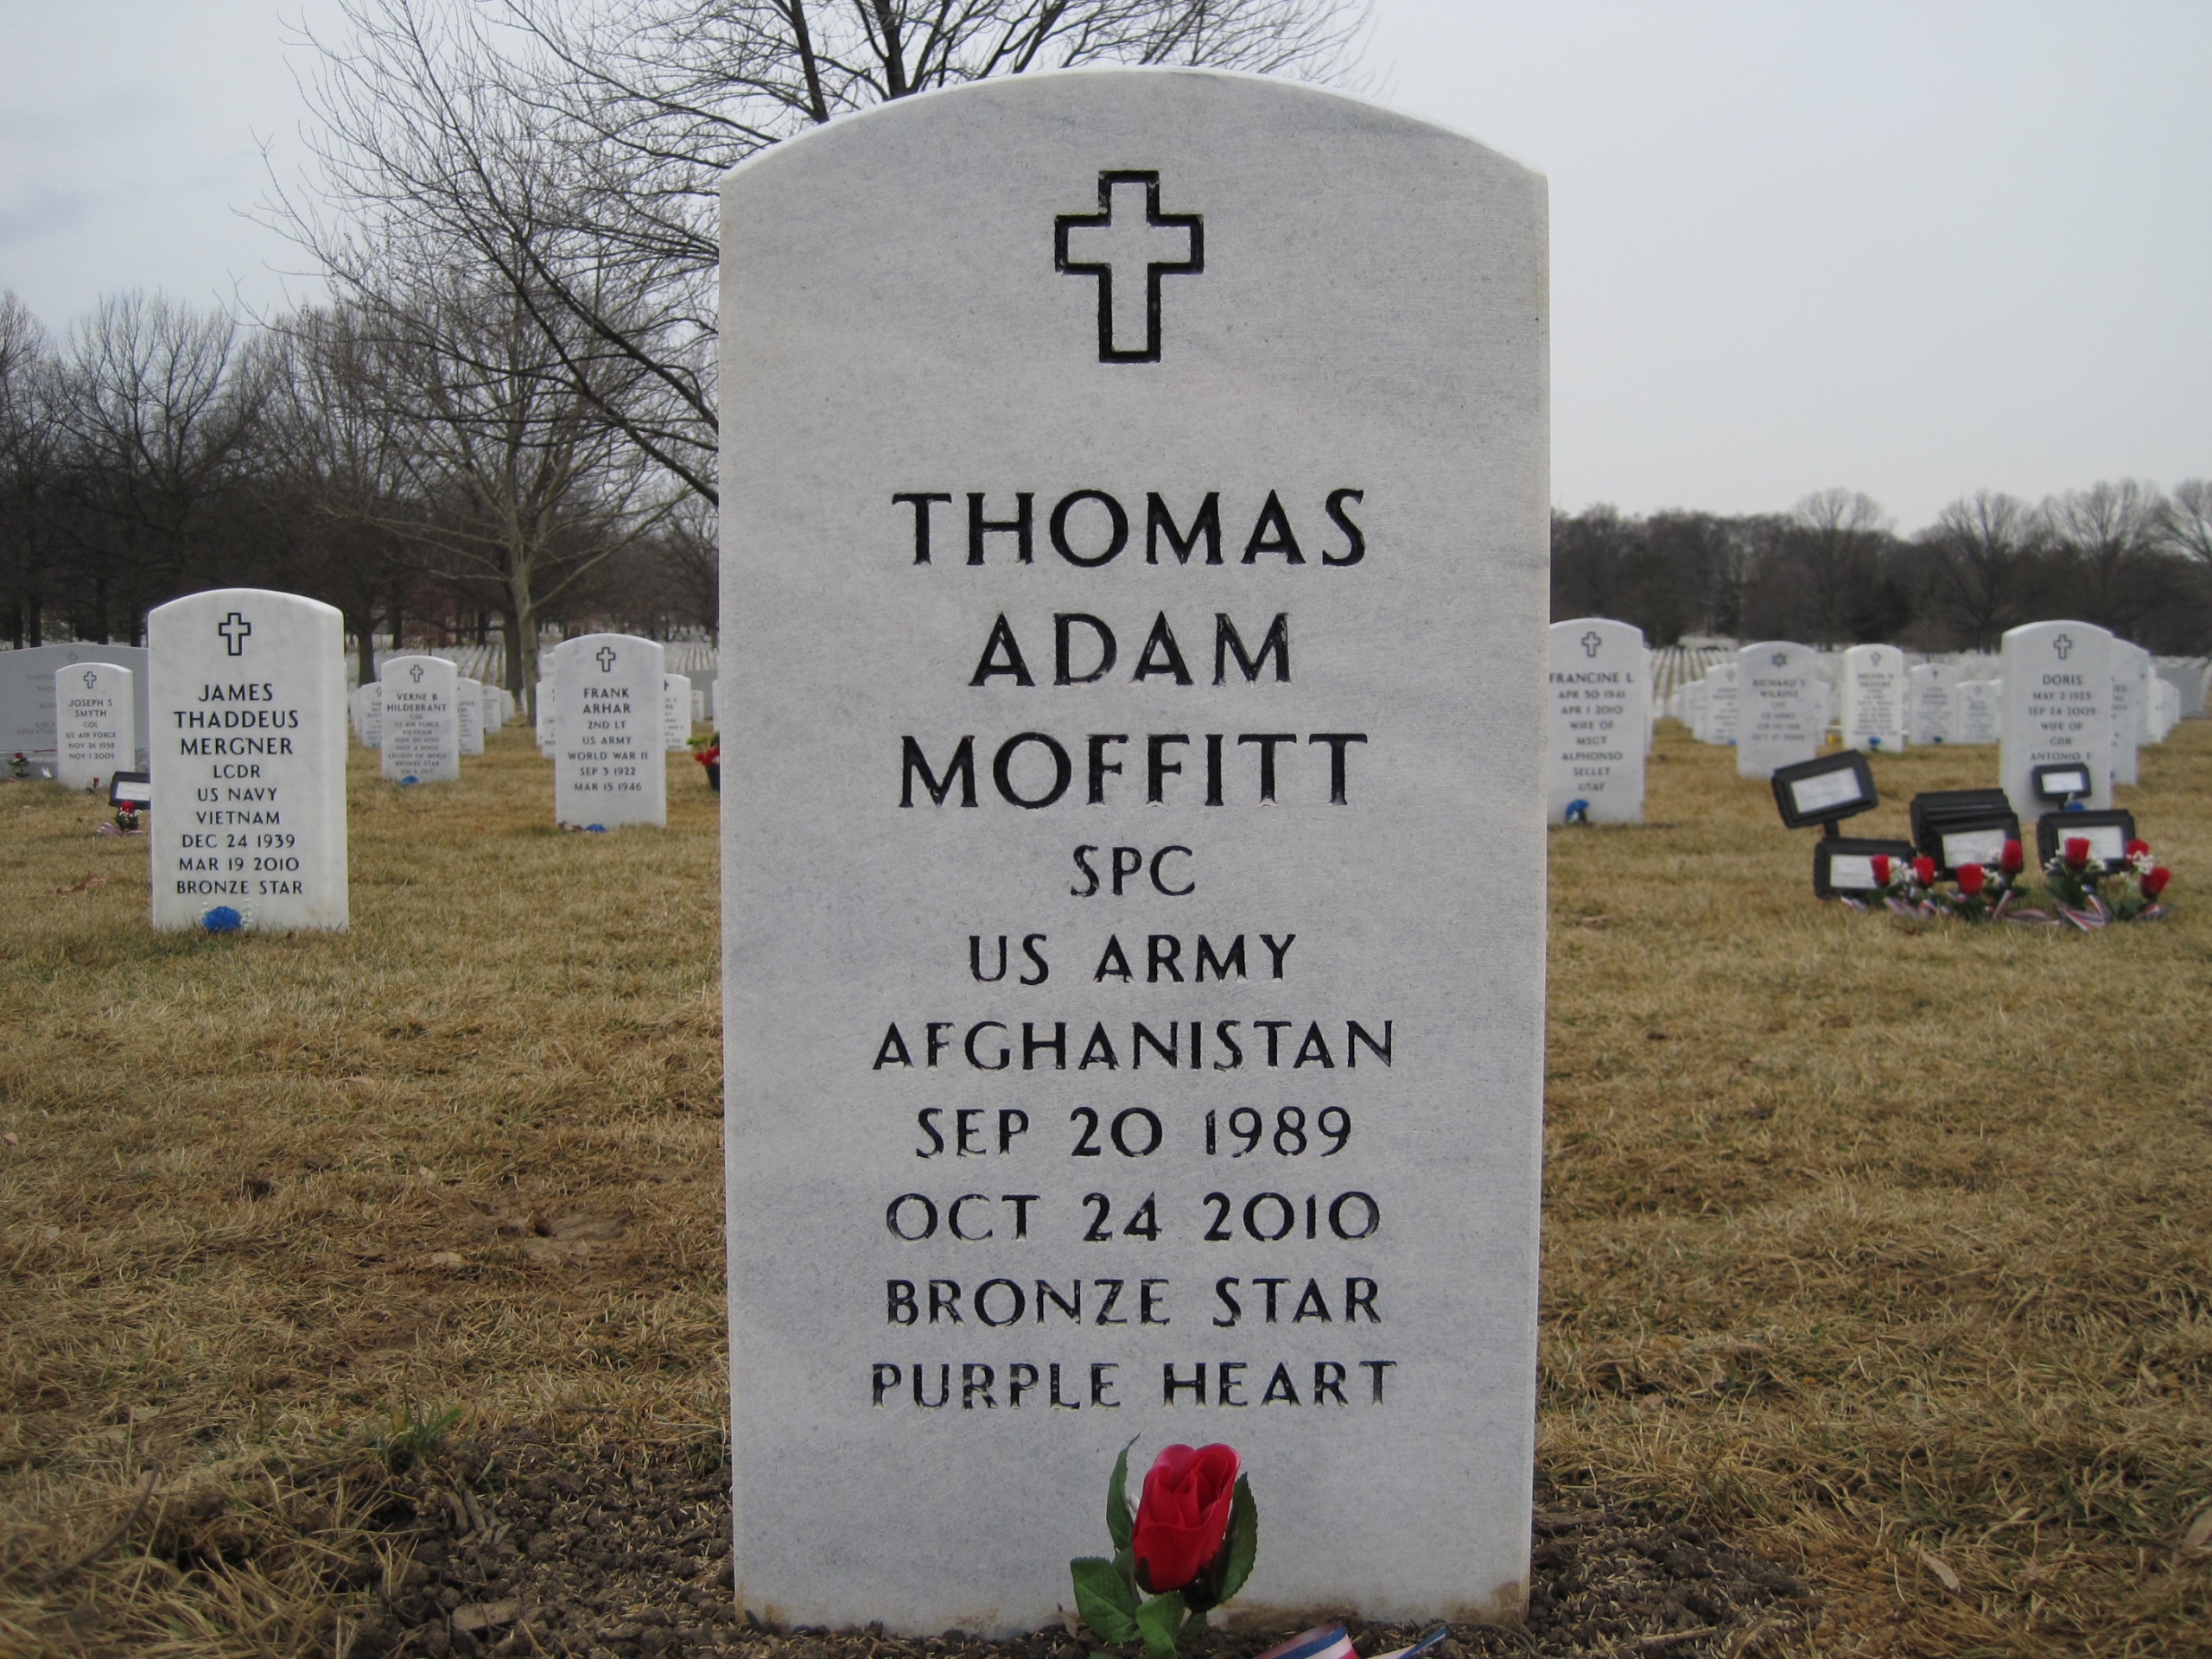 tamoffitt-gravesite-photo-by-eileen-horan-february-2011-002